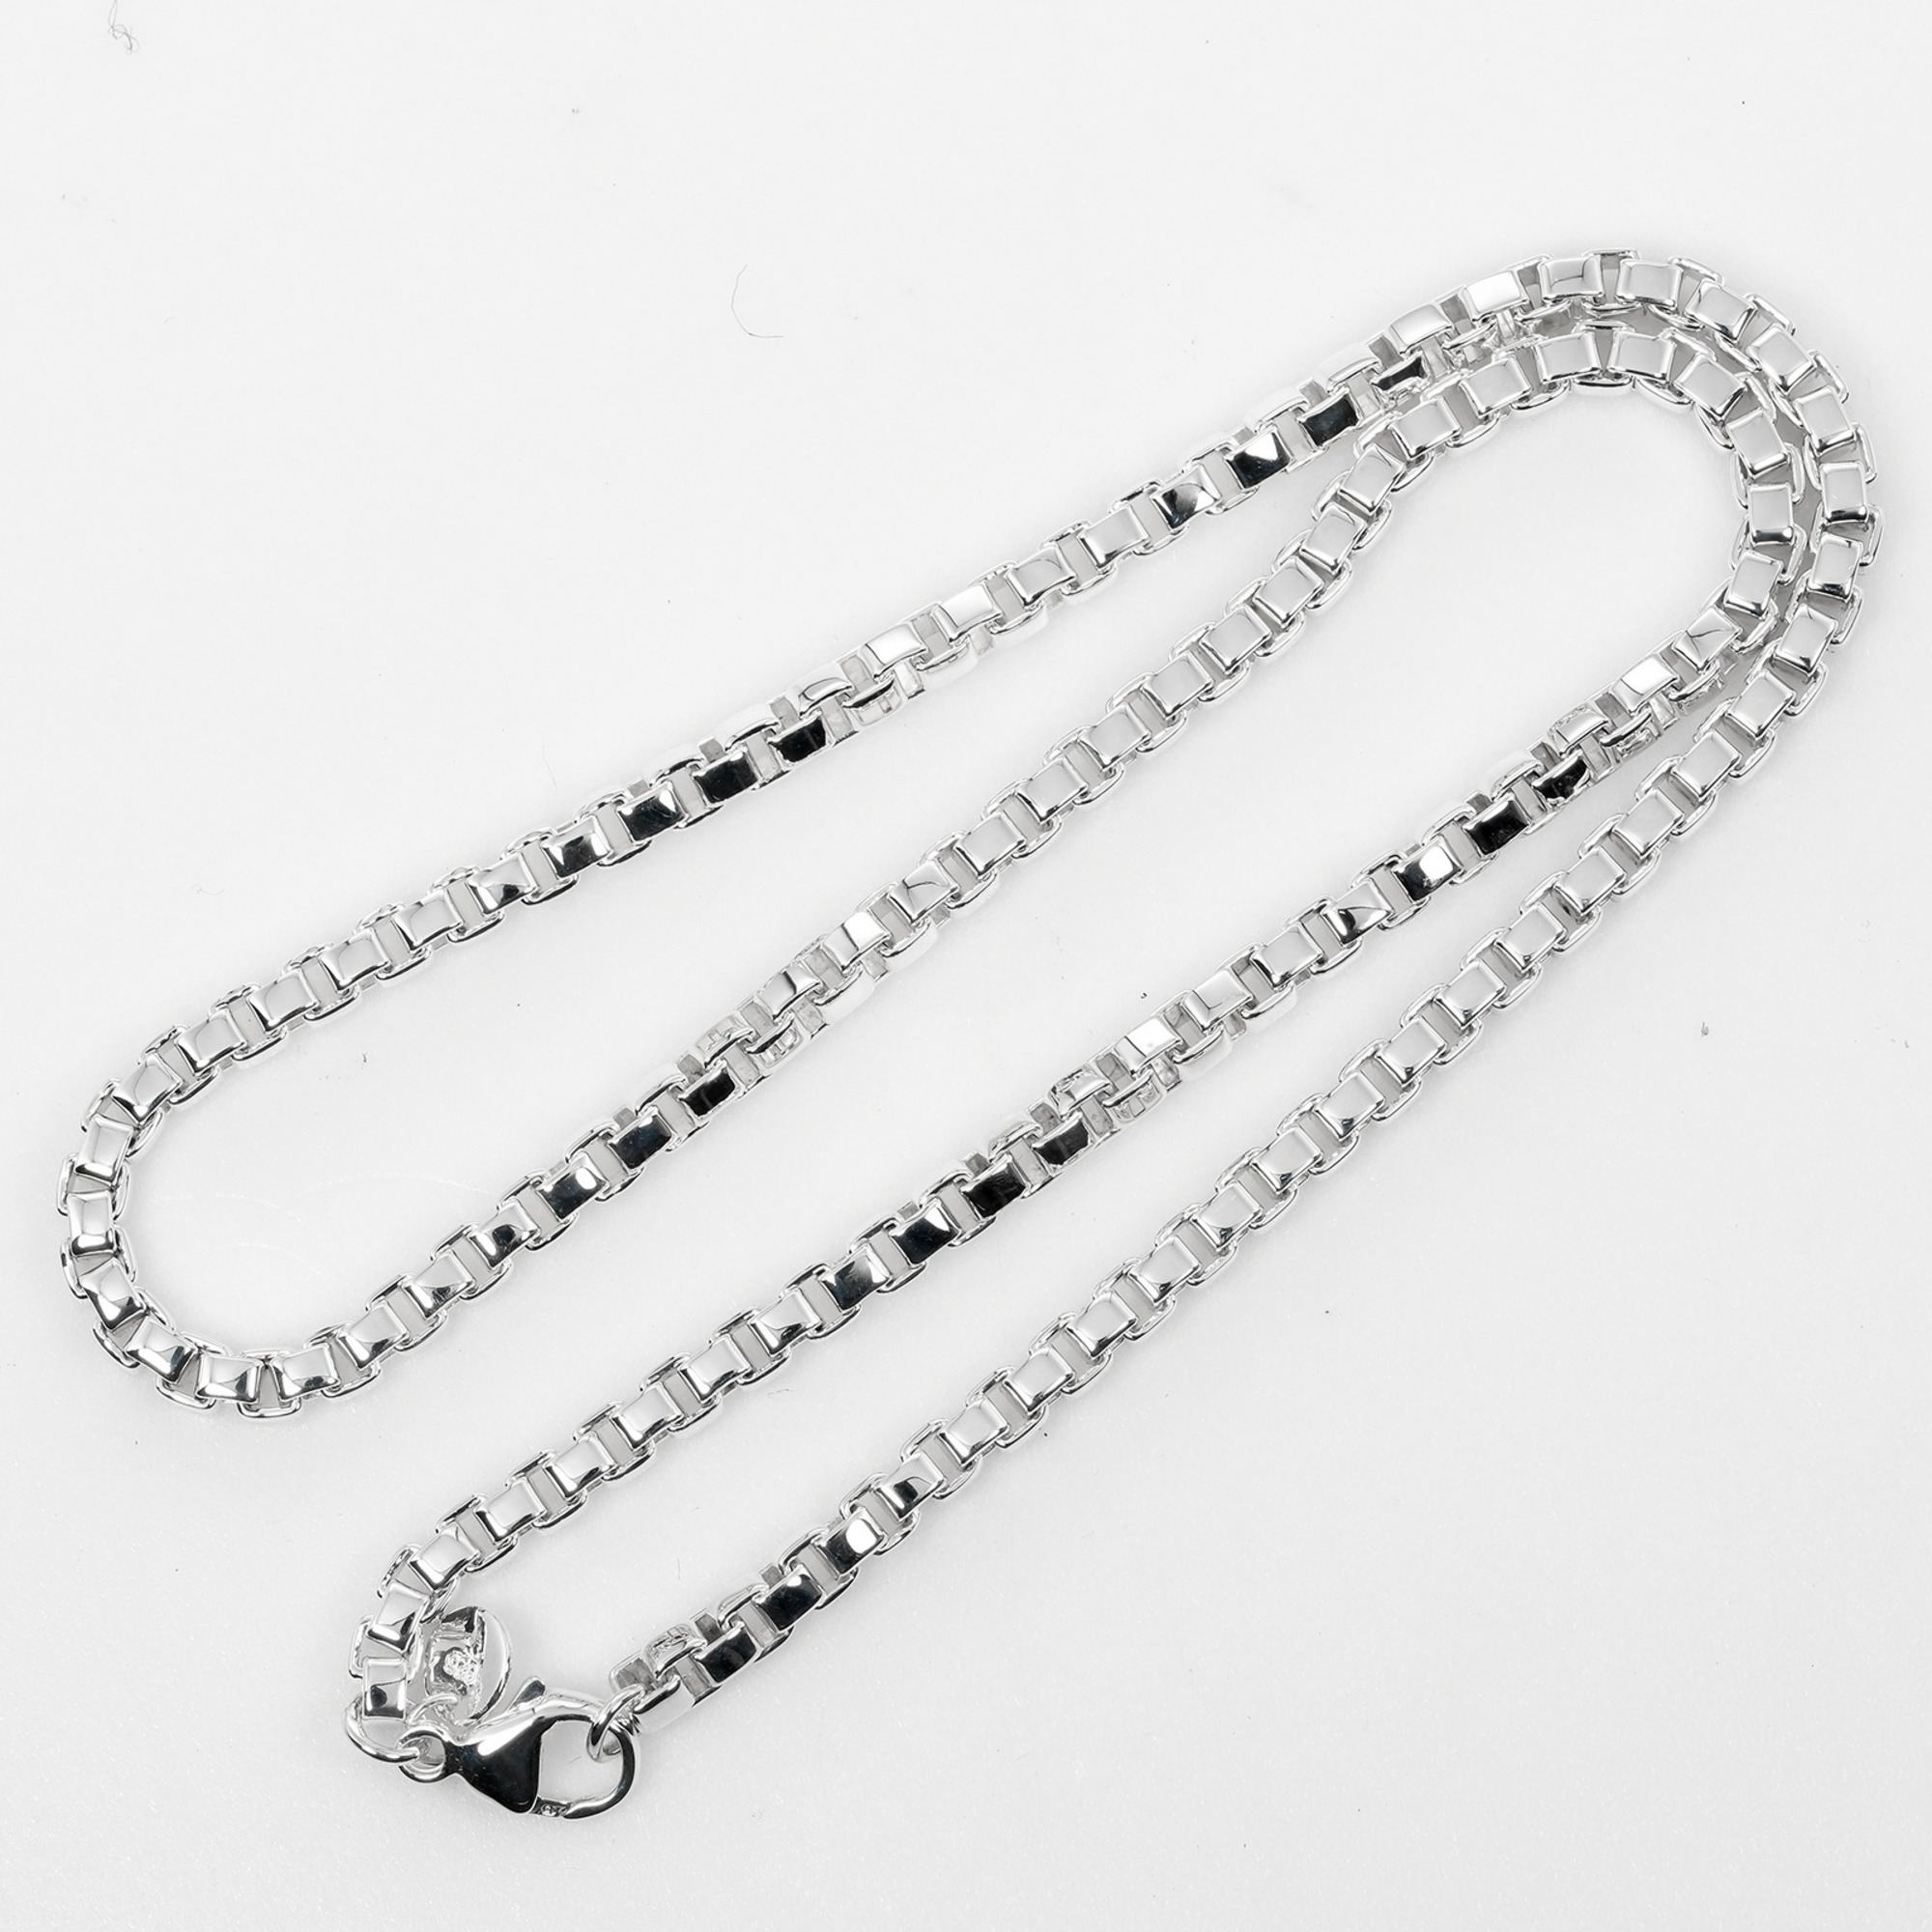 Tiffany TIFFANY&Co. Venetian Necklace Choker Silver 925 Approx. 36.38g I112223048